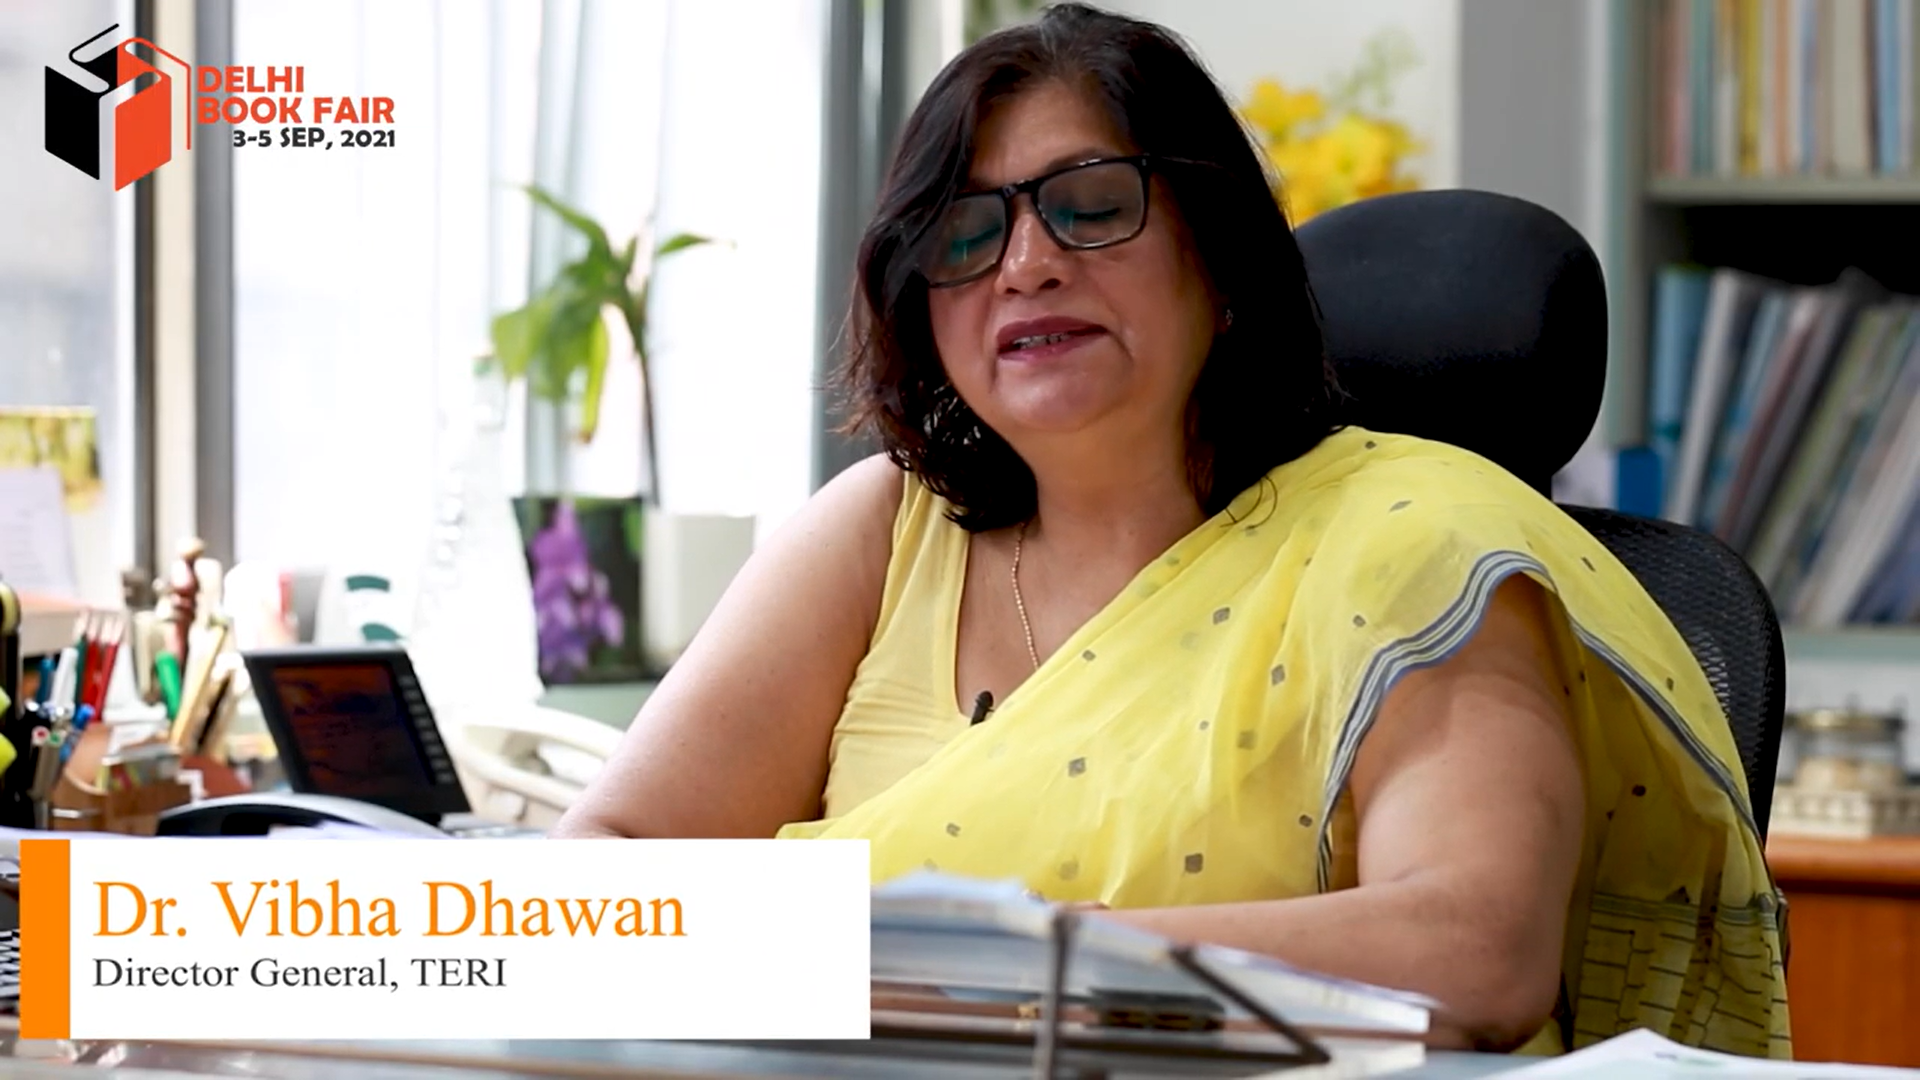 Delhi Book Fair 2021 | Dr. Vibha Dhawan, Director General, TERI